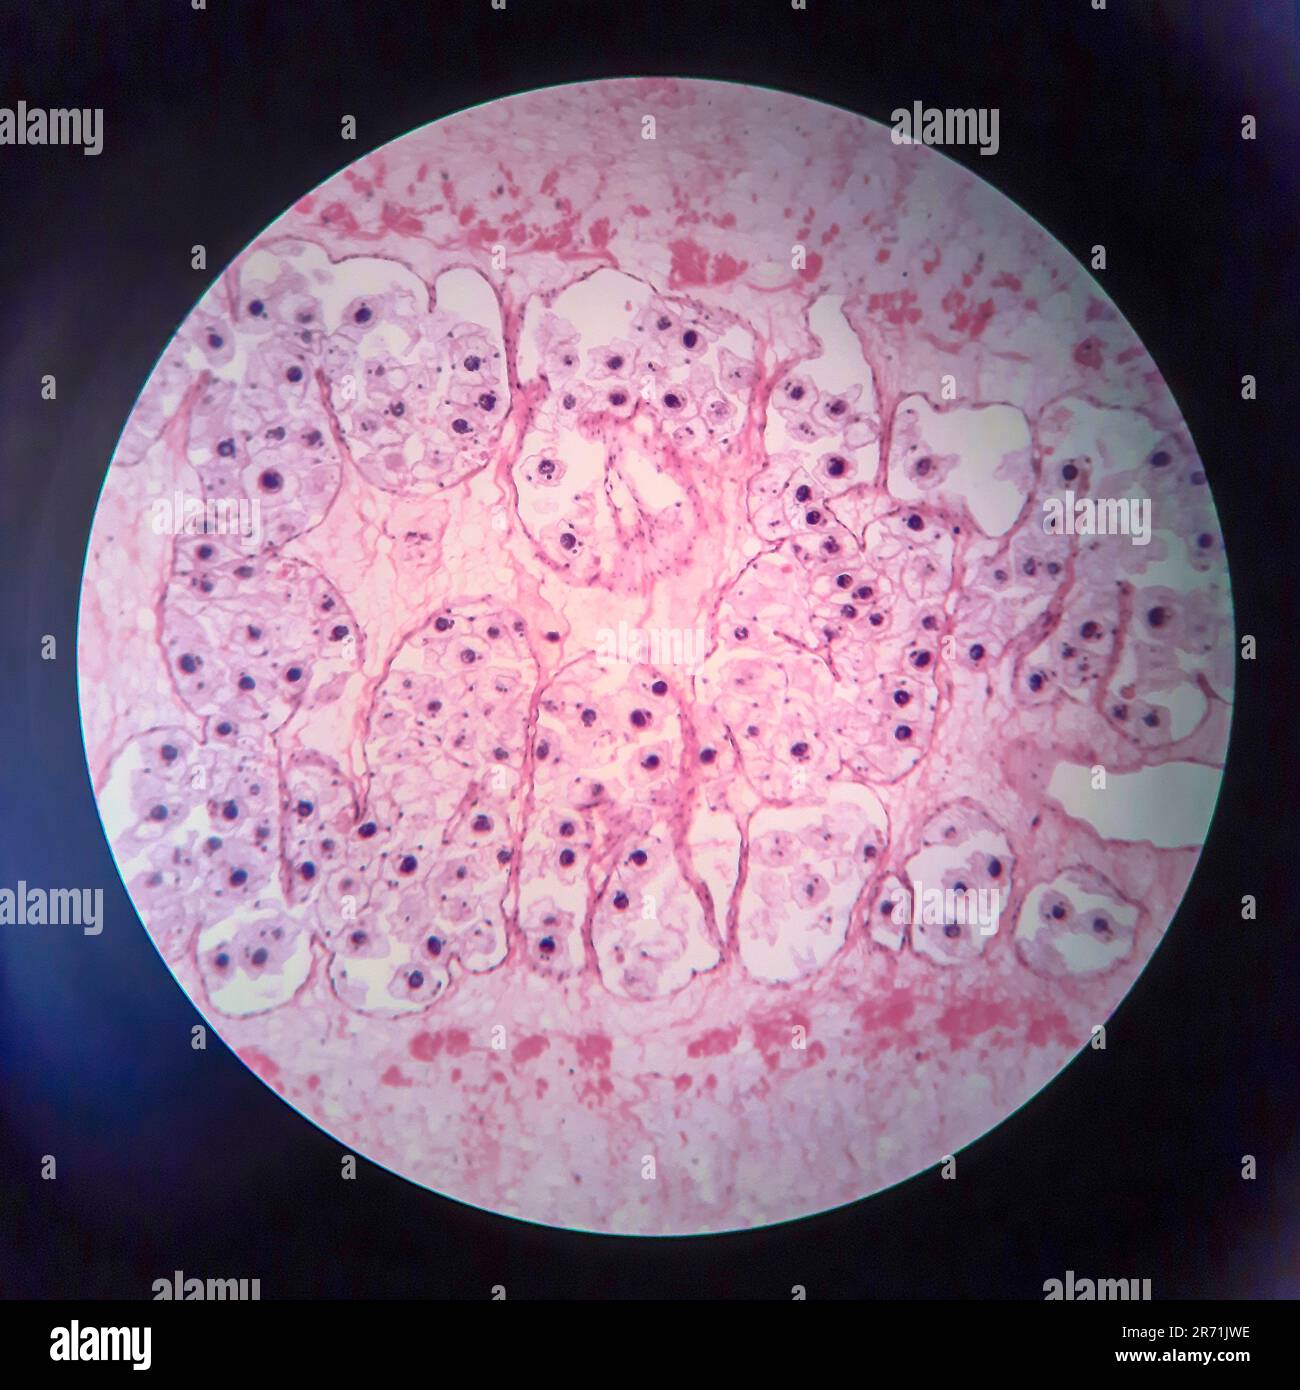 Pork tapeworm Taenia solium, section through the body, light micrograph Stock Photo